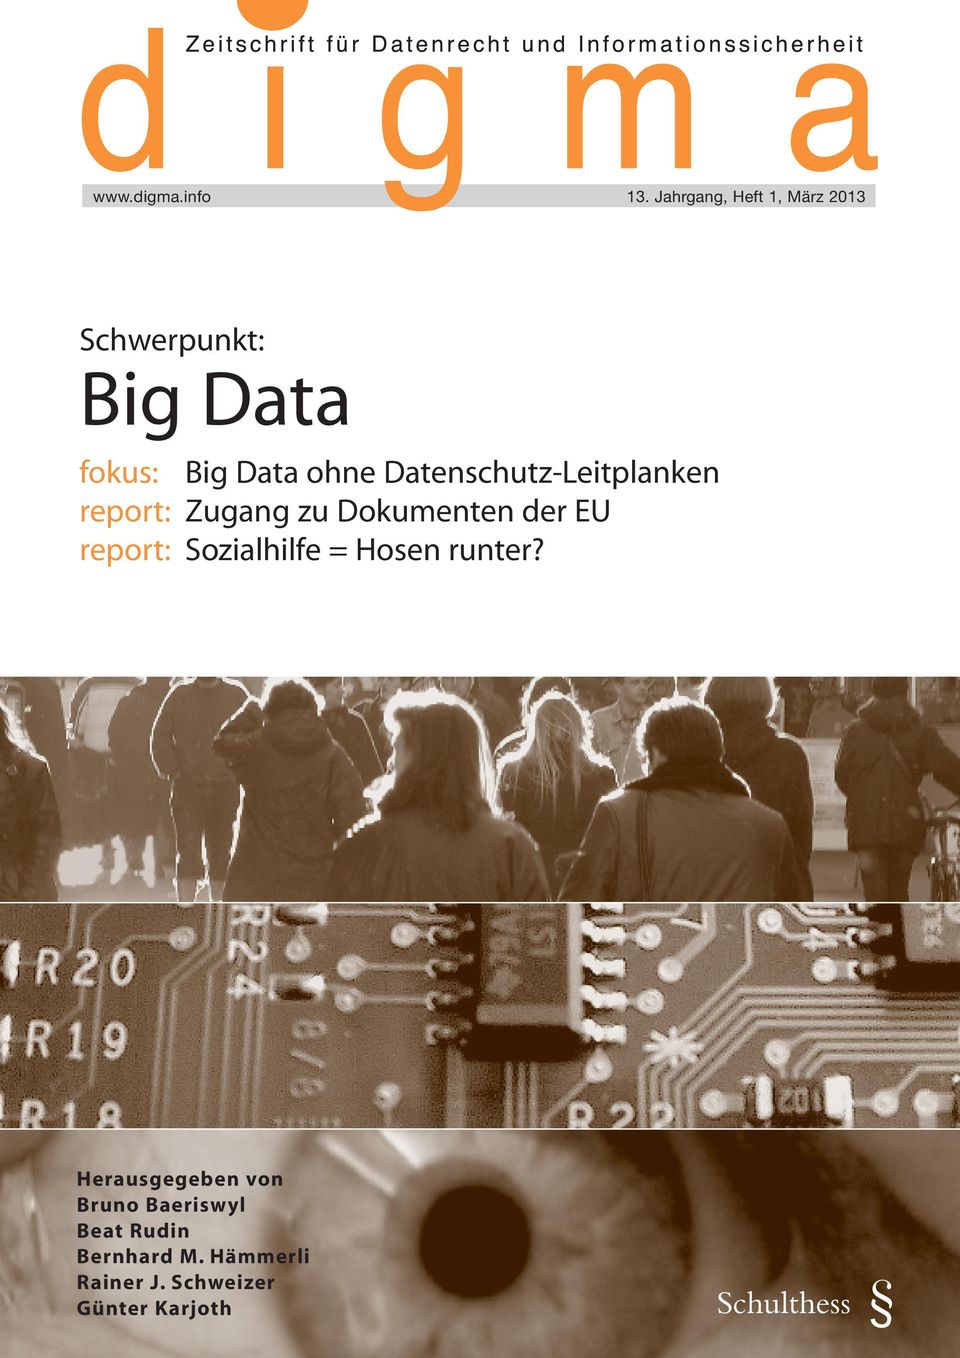 Datenschutz-Leitplanken report: Zugang zu Dokumenten der EU report: